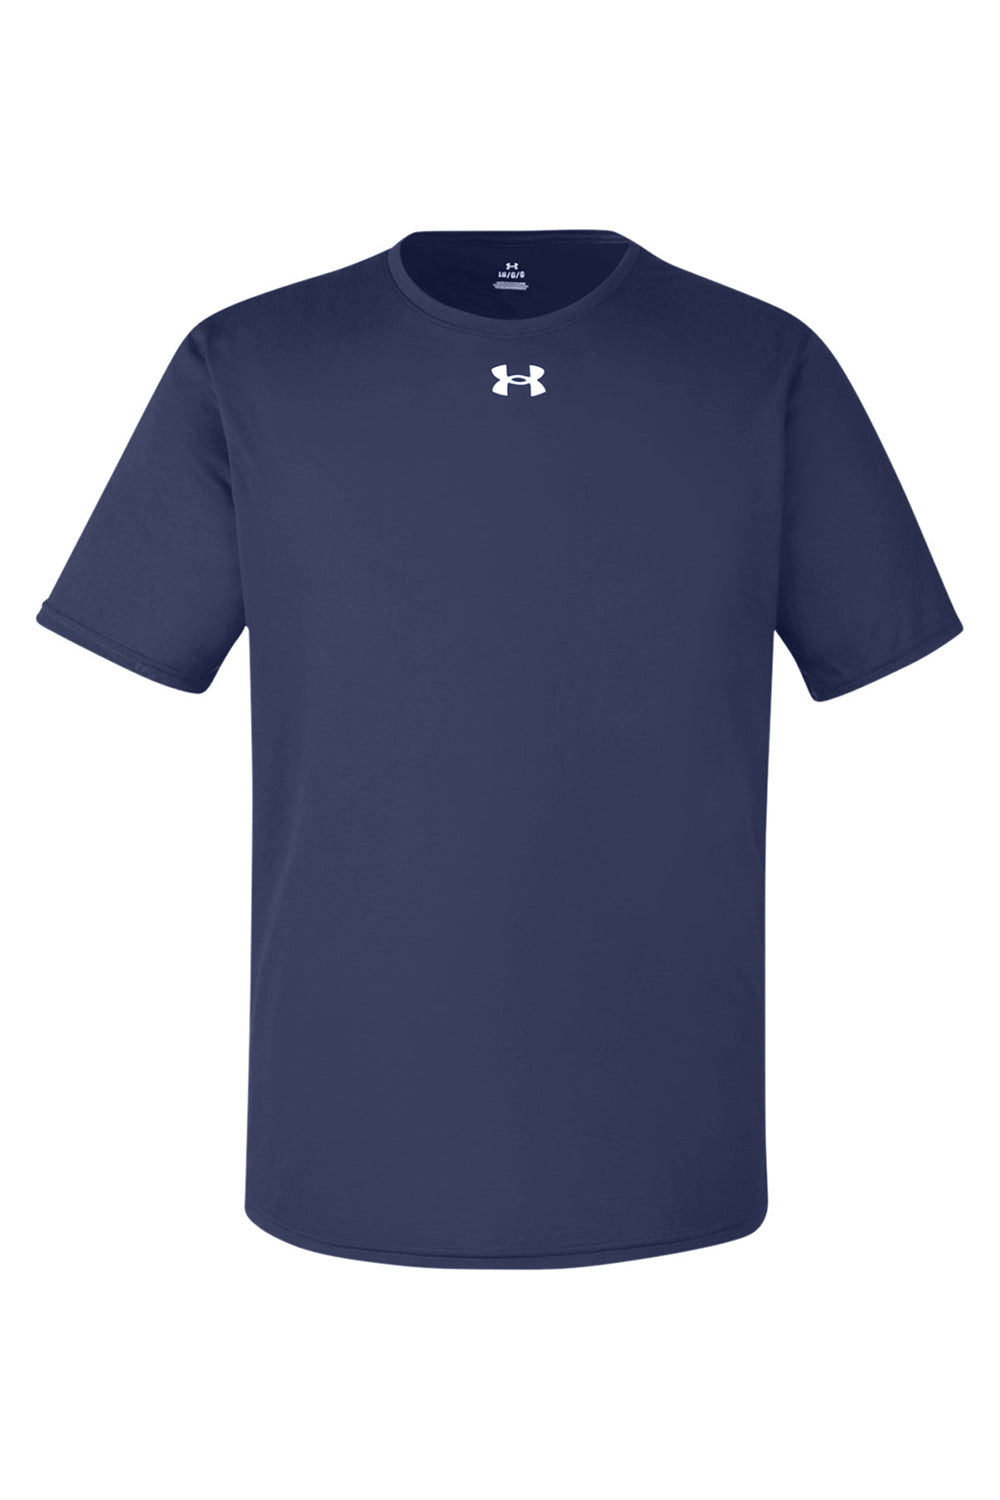 Under Armour Mens Team Tech Moisture Wicking Short Sleeve Crewneck T-Shirt  - Midnight Navy Blue - NEW